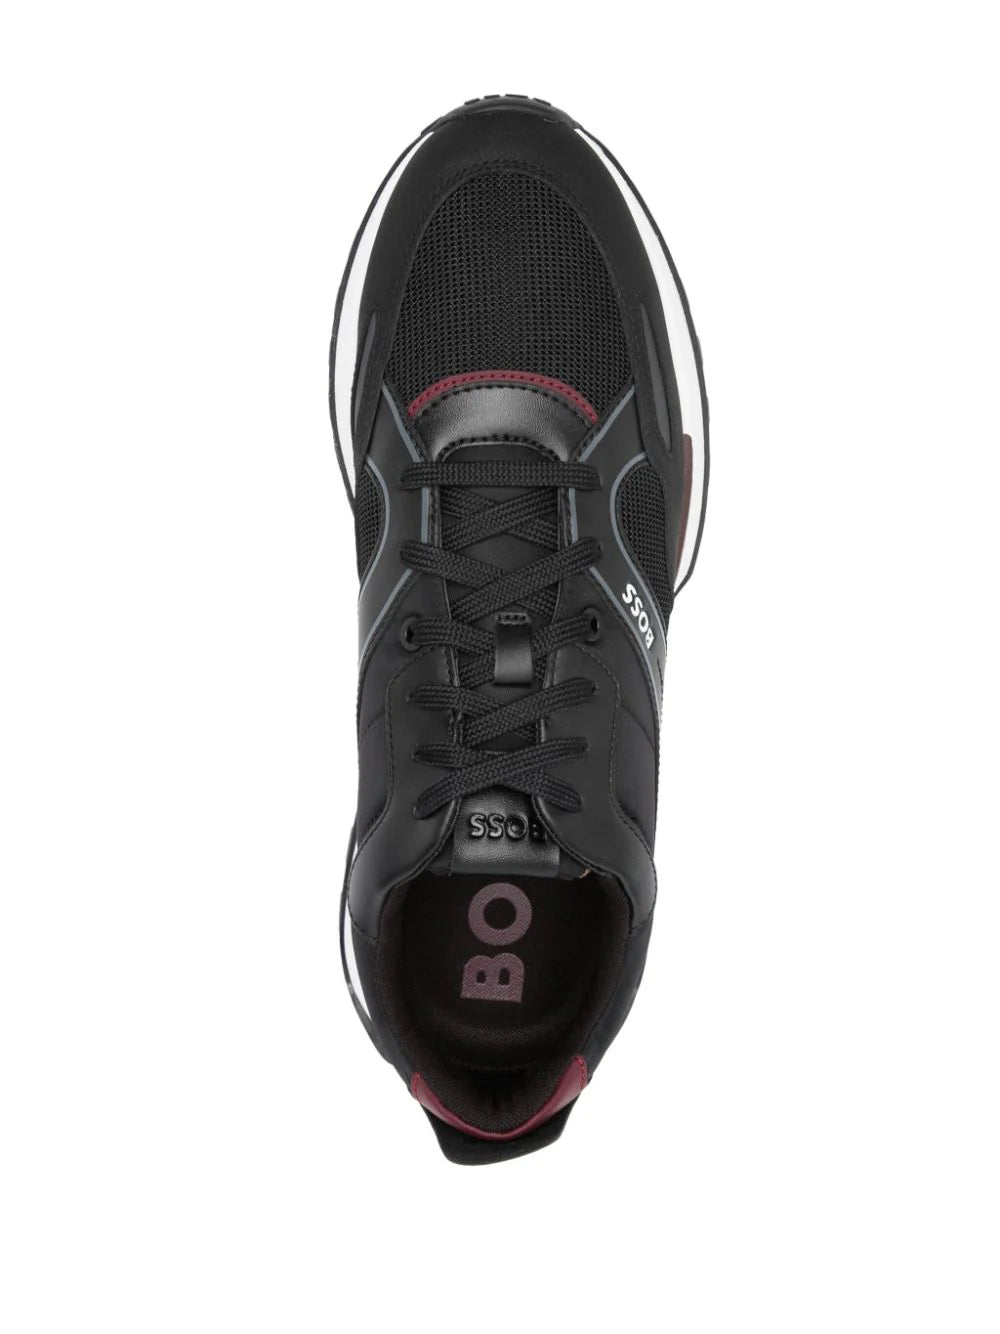 BOSS MEN Panelled Low Top Sneakers Black/White/Bordeaux Red - MAISONDEFASHION.COM